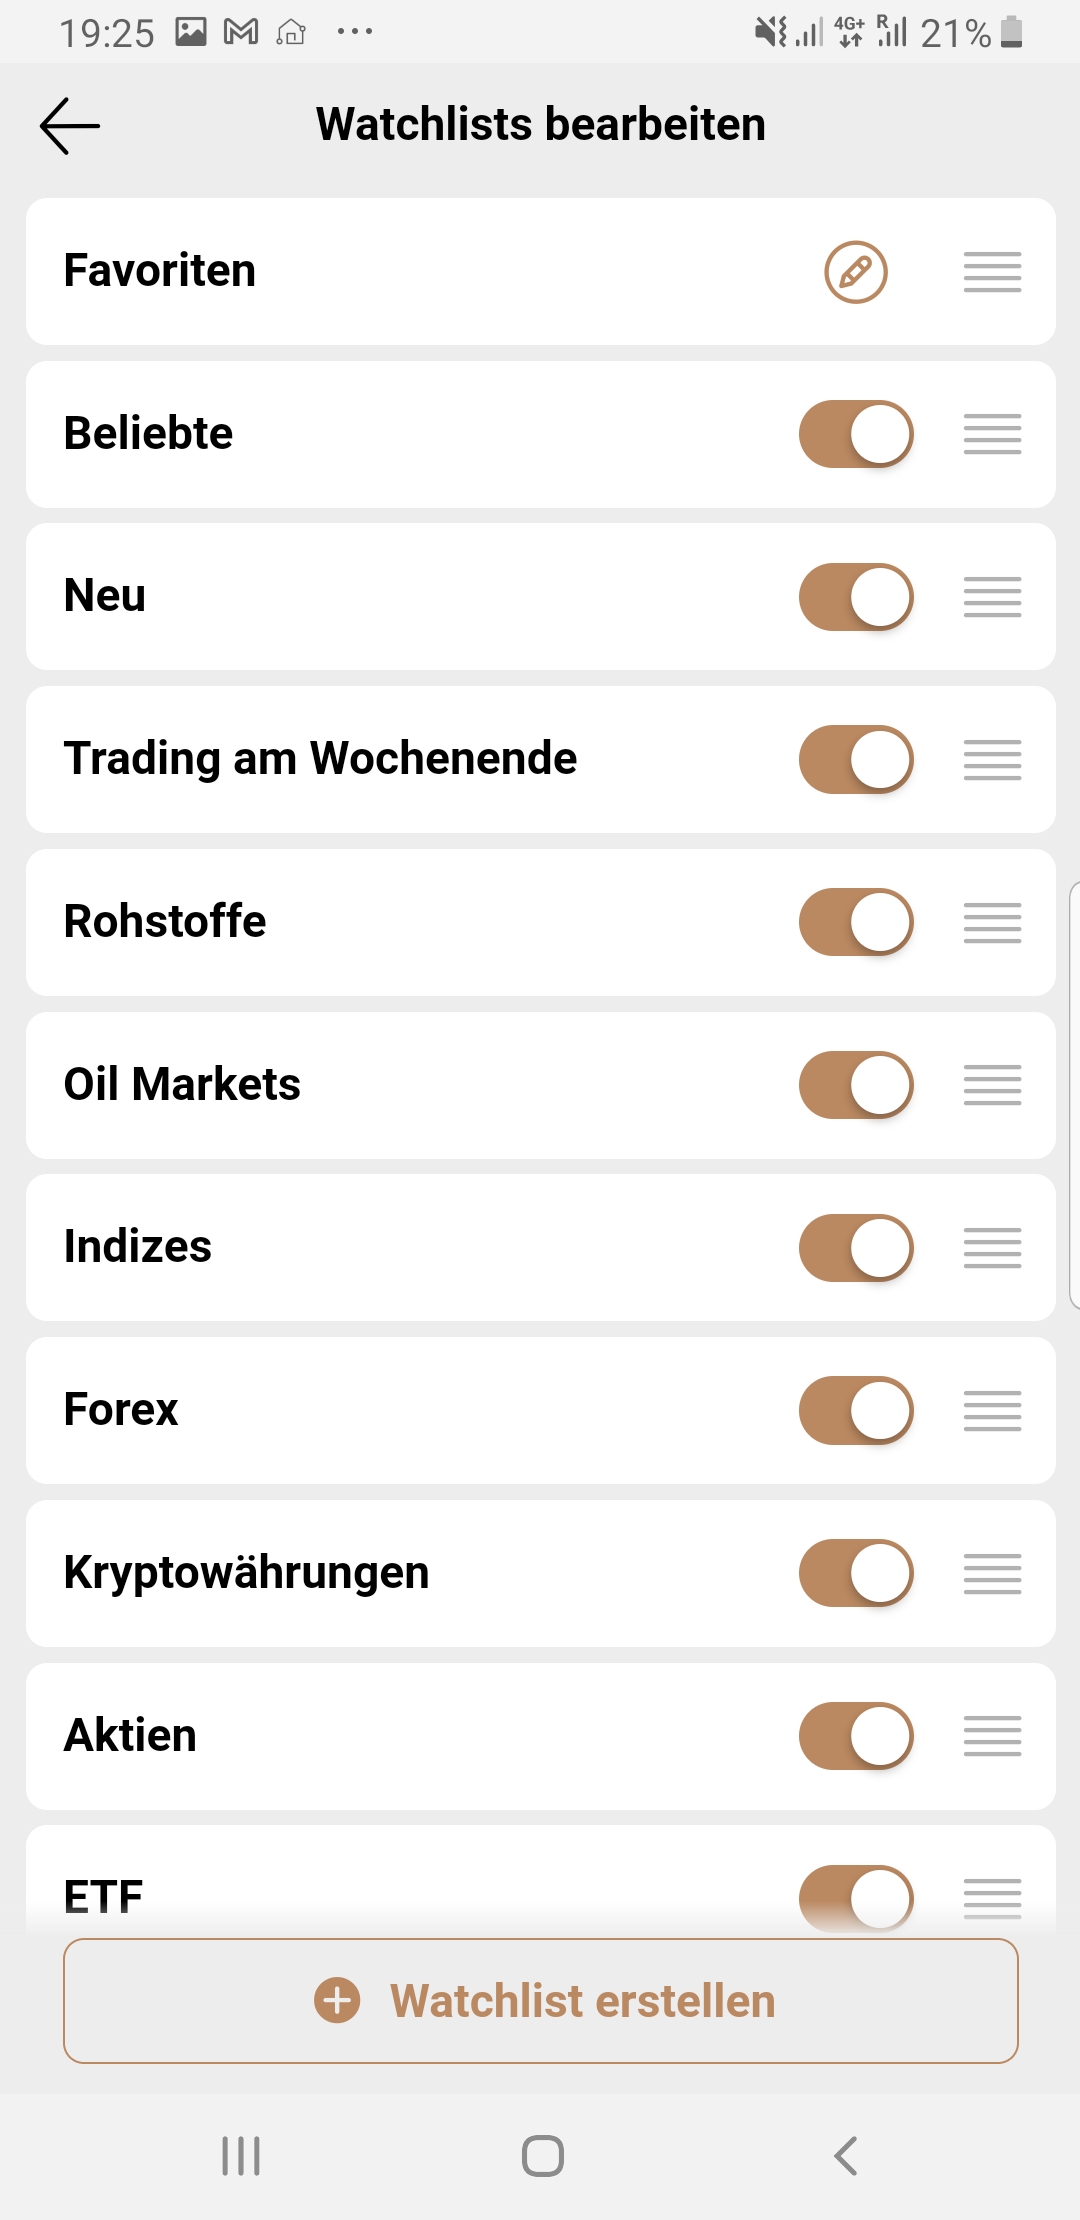 Capital.com - Watchlist mit Auswahl die Märkte zu aktivieren und zu deaktivieren